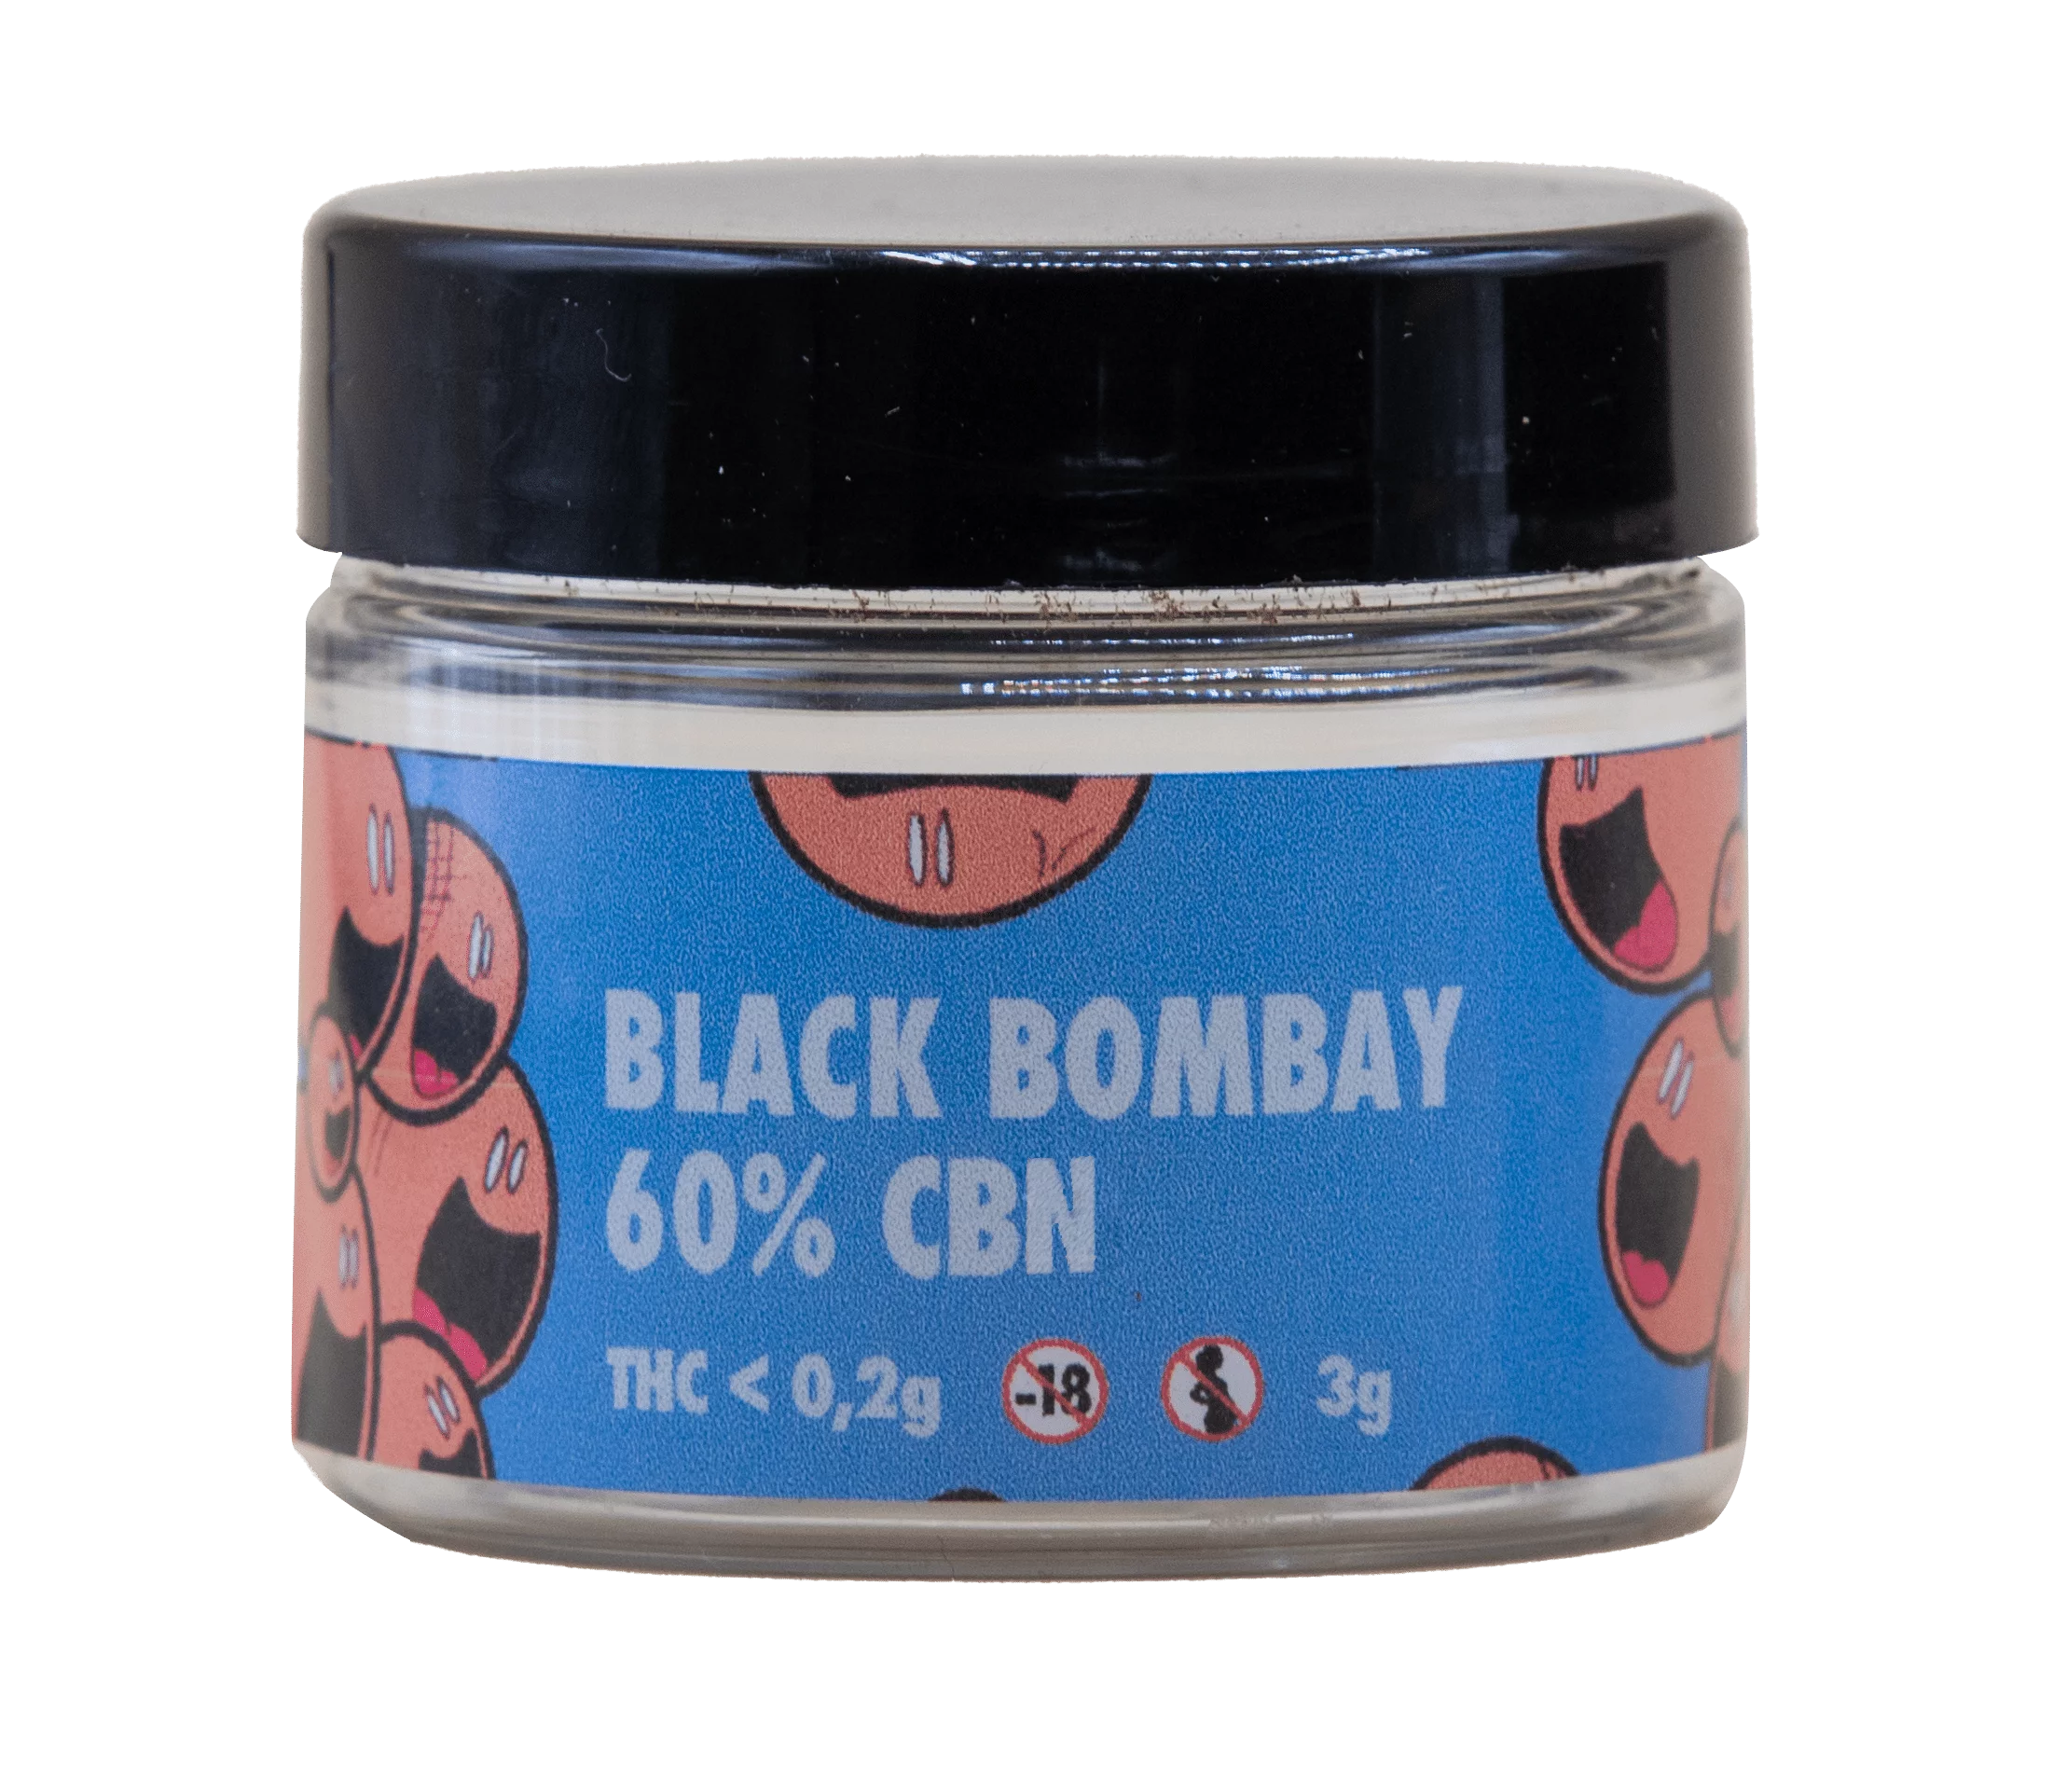 Black Bombay 60% CBN 3g